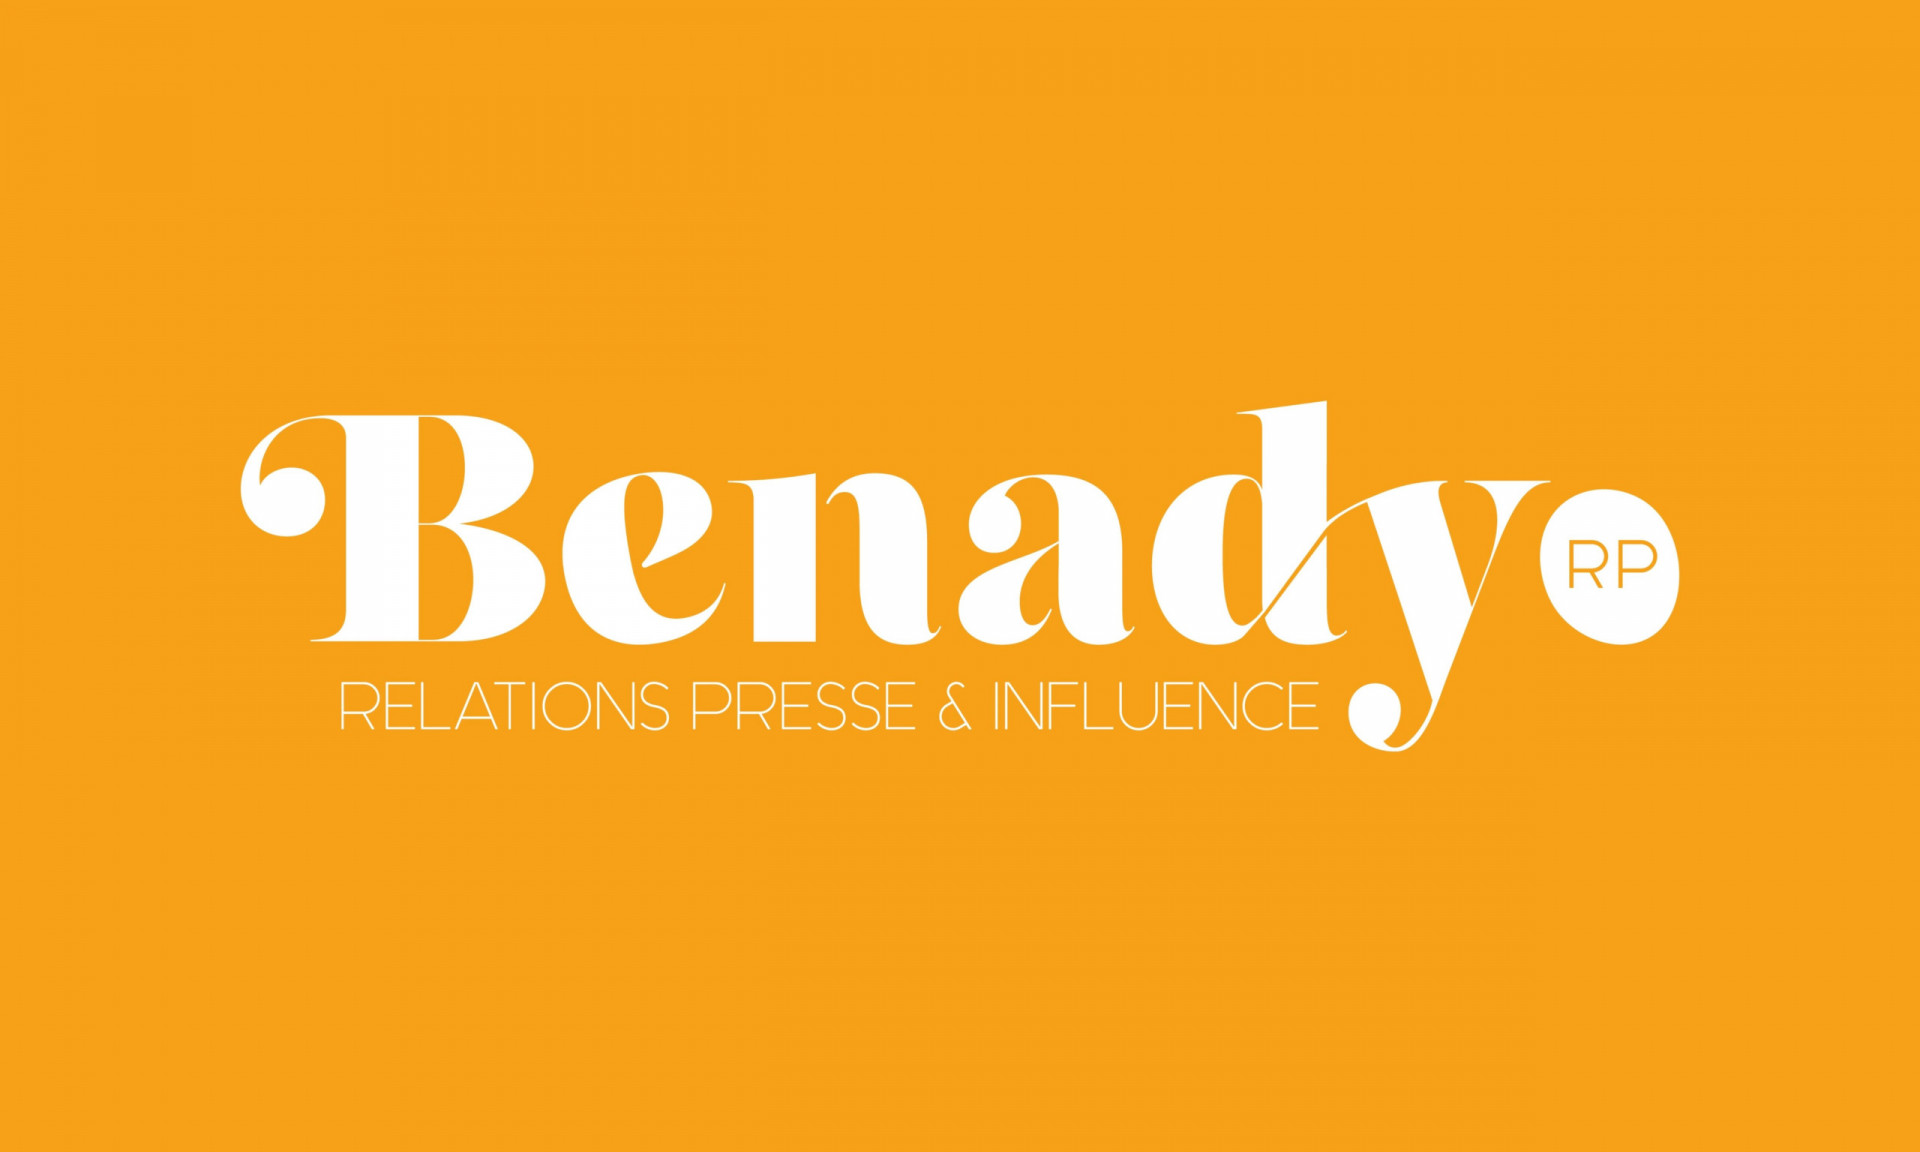 Benadyrp agence relation press conception site web, identité et supports de communication